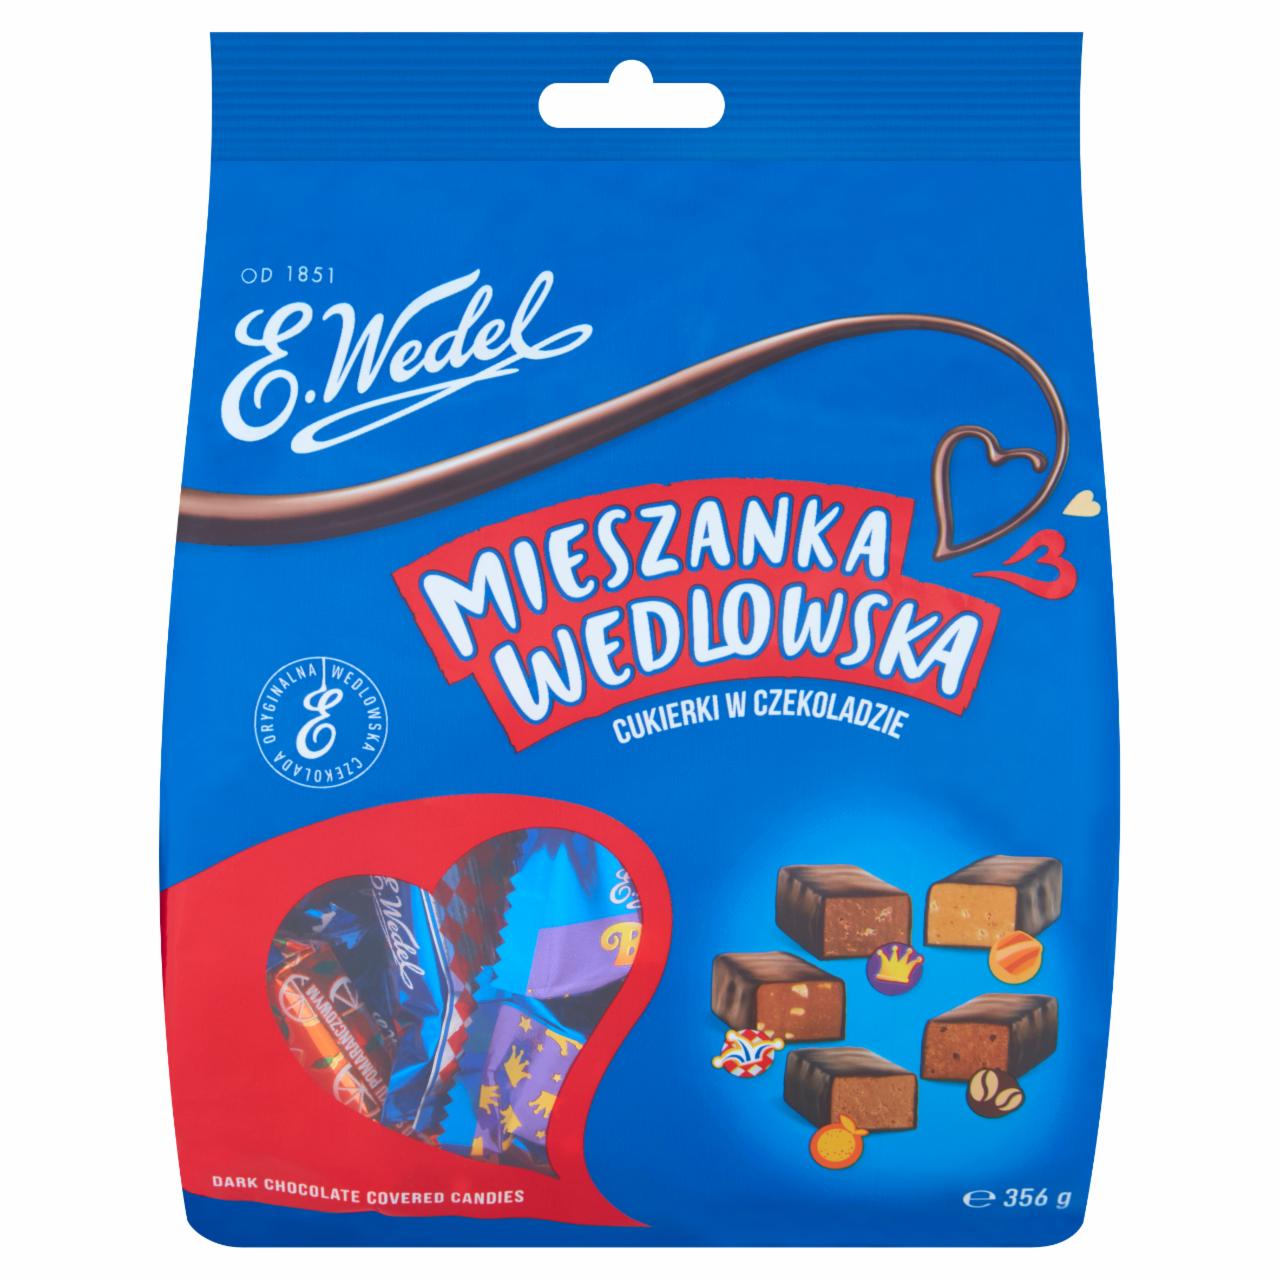 Zdjęcia - E. Wedel Mieszanka Wedlowska Cukierki w czekoladzie deserowej 356 g